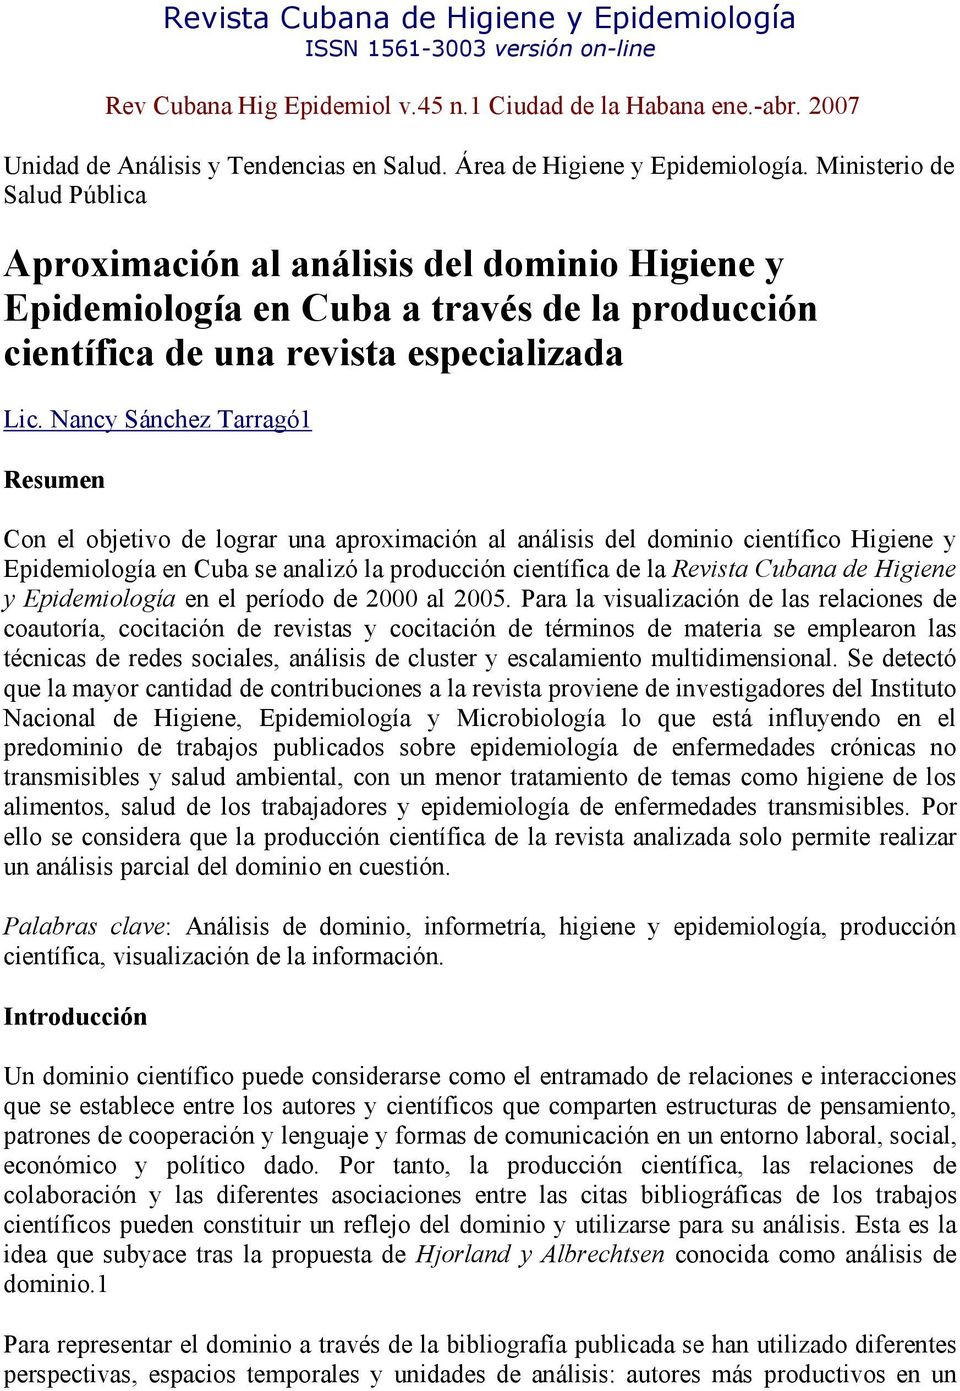 Nancy Sánchez Tarragó1 Resumen Con el objetivo de lograr una aproximación al análisis del dominio científico Higiene y Epidemiología en Cuba se analizó la producción científica de la Revista Cubana